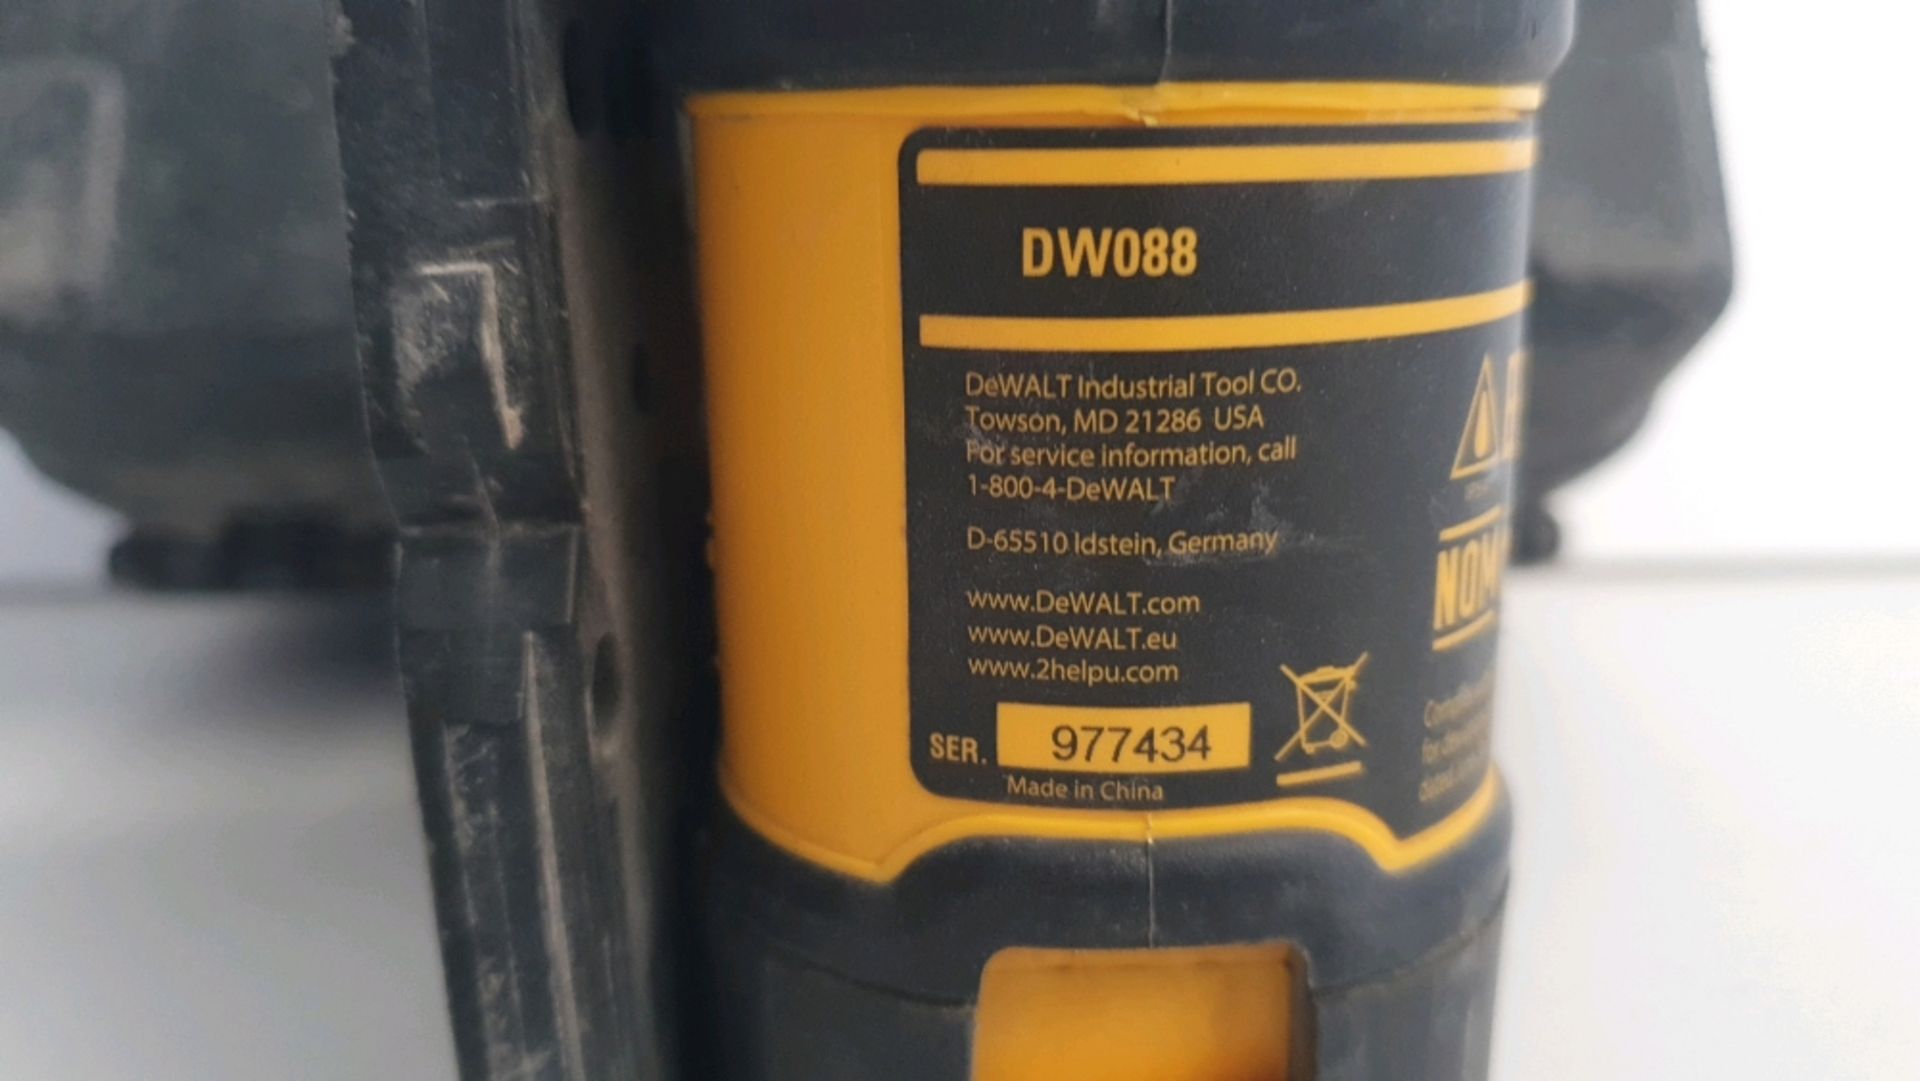 DeWalt DW088 Cross Line Laser - Image 11 of 11